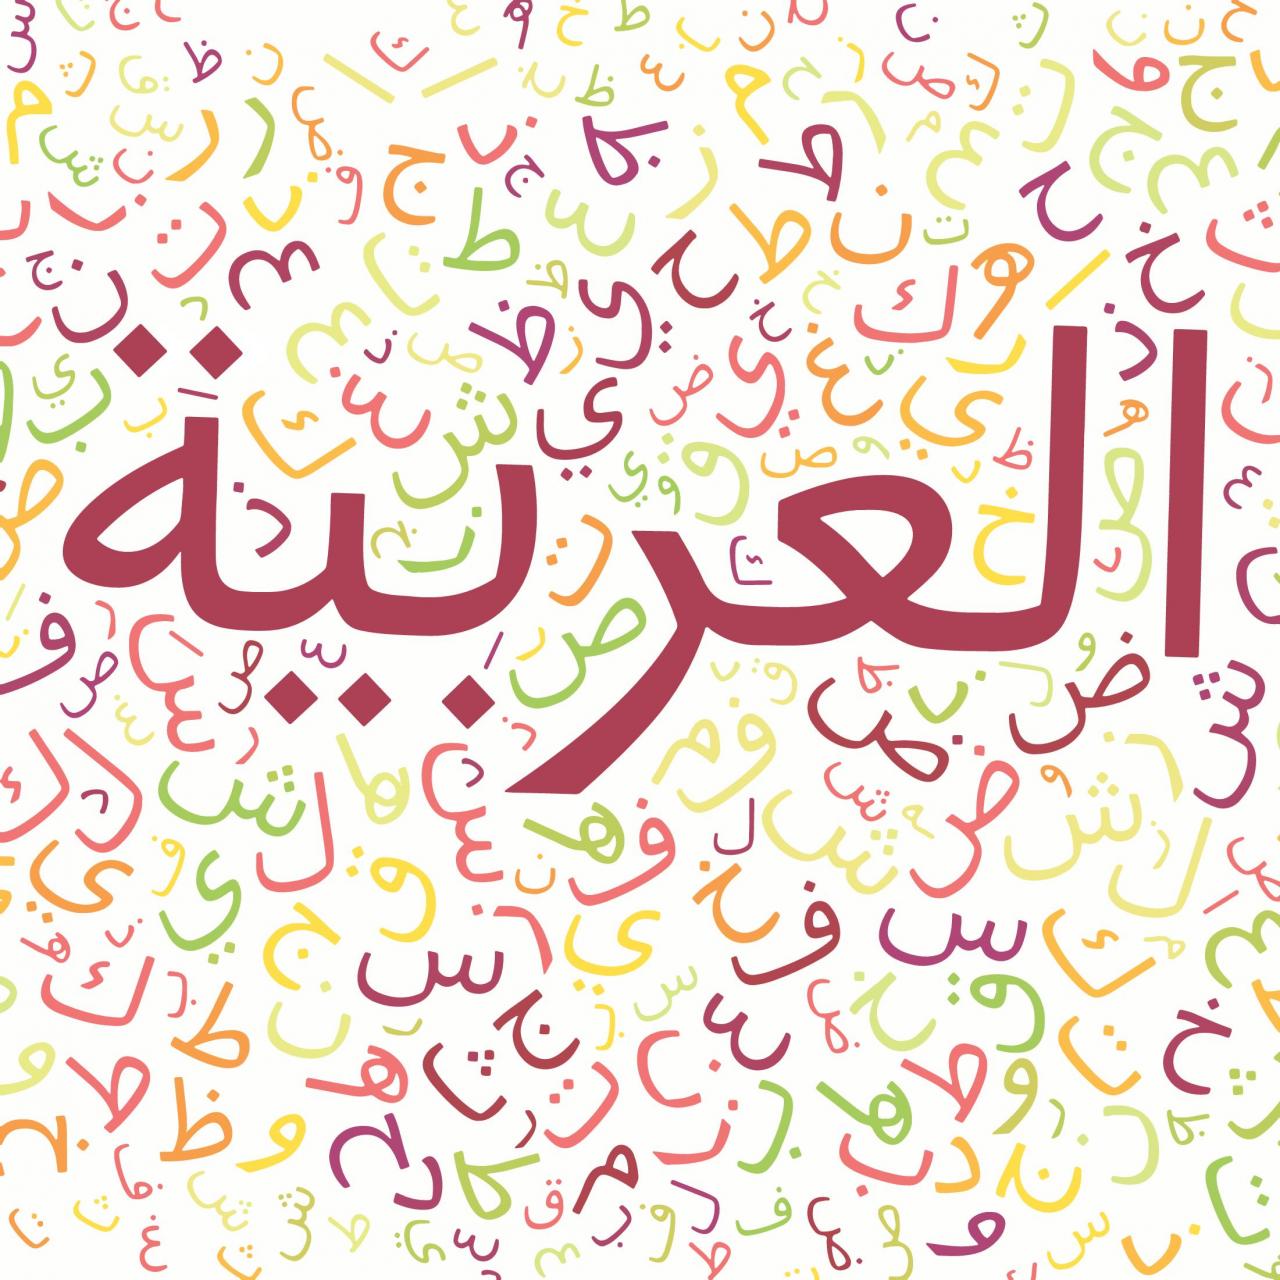 صور عن اللغة العربية , اجمل الكتابات بالصور للغة العربية كيوت